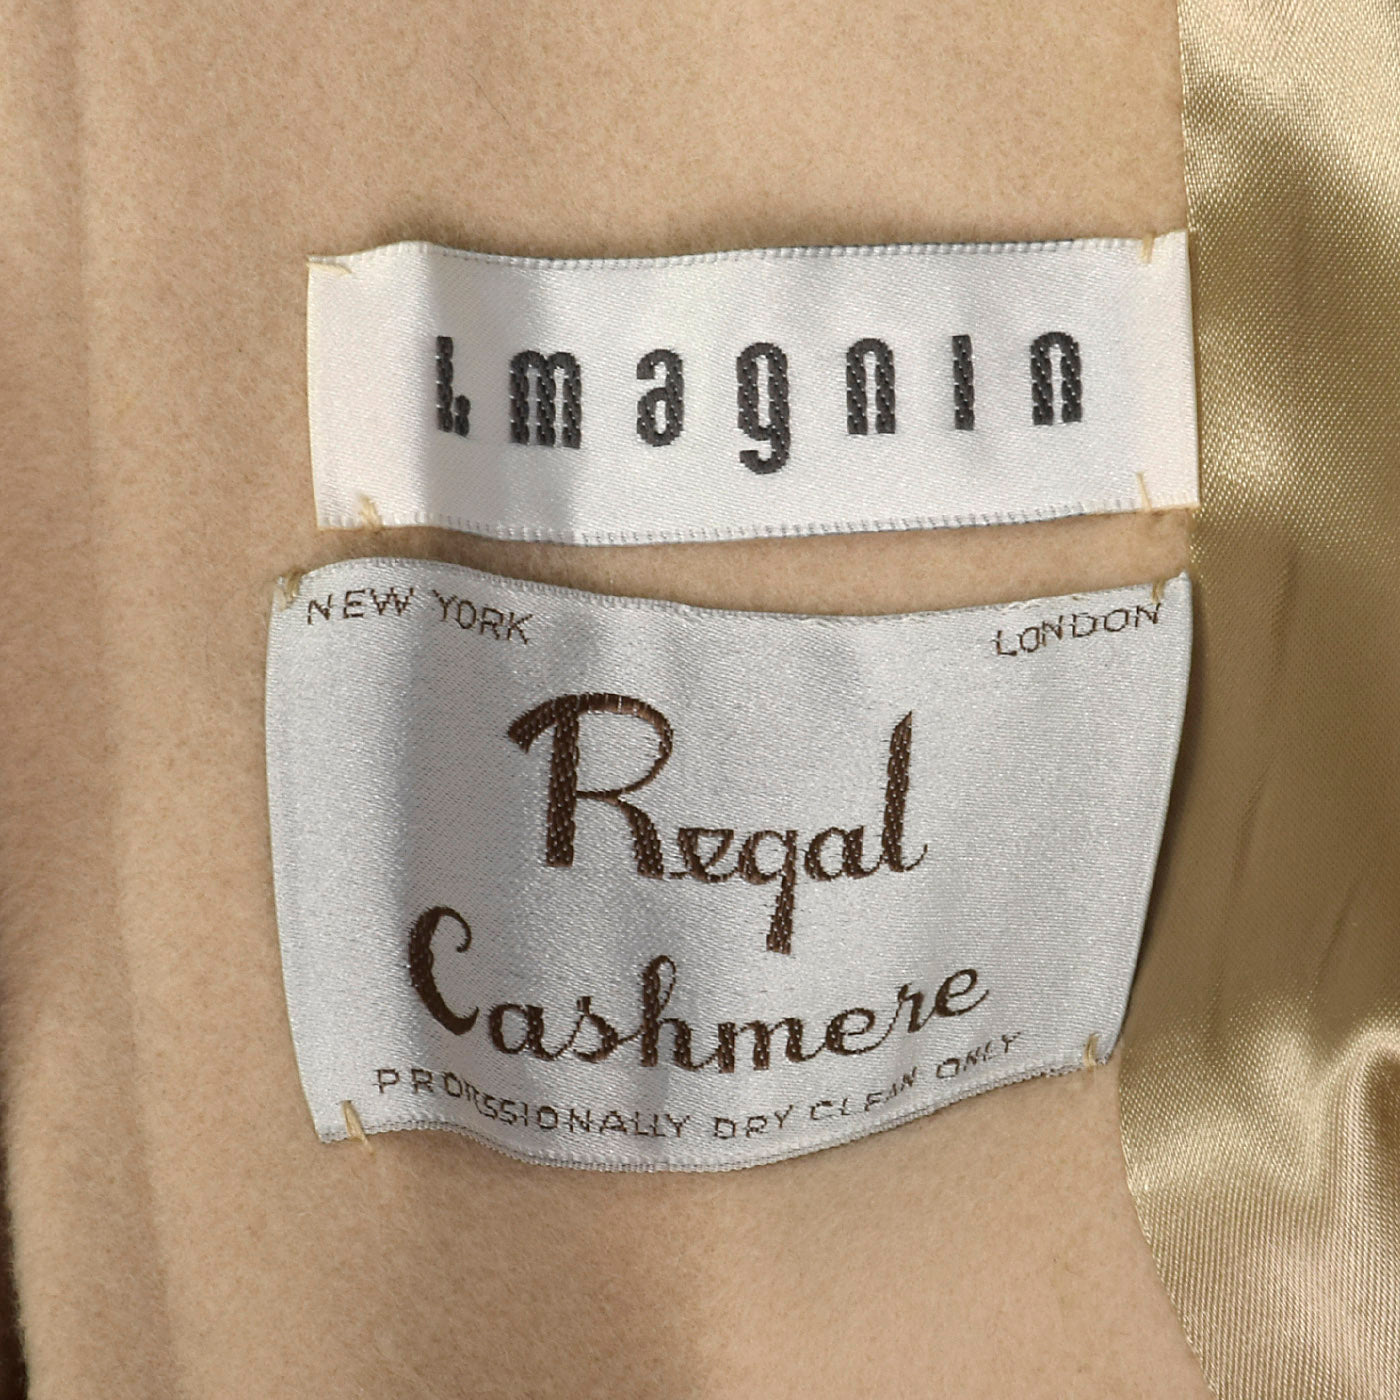 Medium I. Magnin 1980s Cream Cashmere Wrap Coat